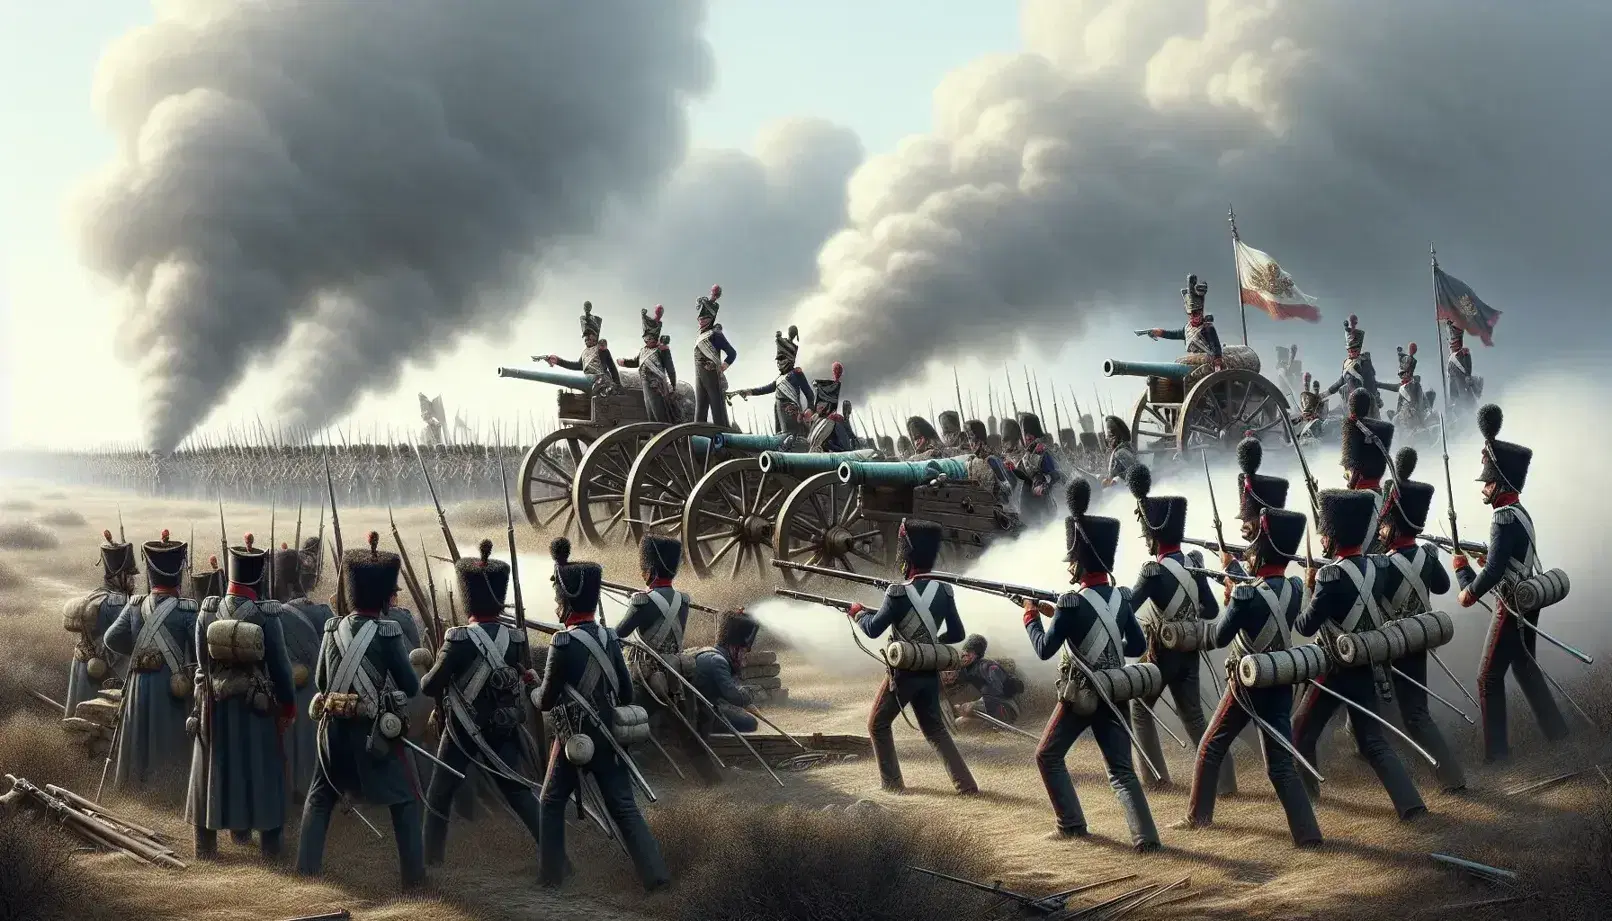 Soldados en uniformes napoleónicos con mosquetes y bayonetas avanzan en un campo de batalla con cañones de bronce y humo al fondo.